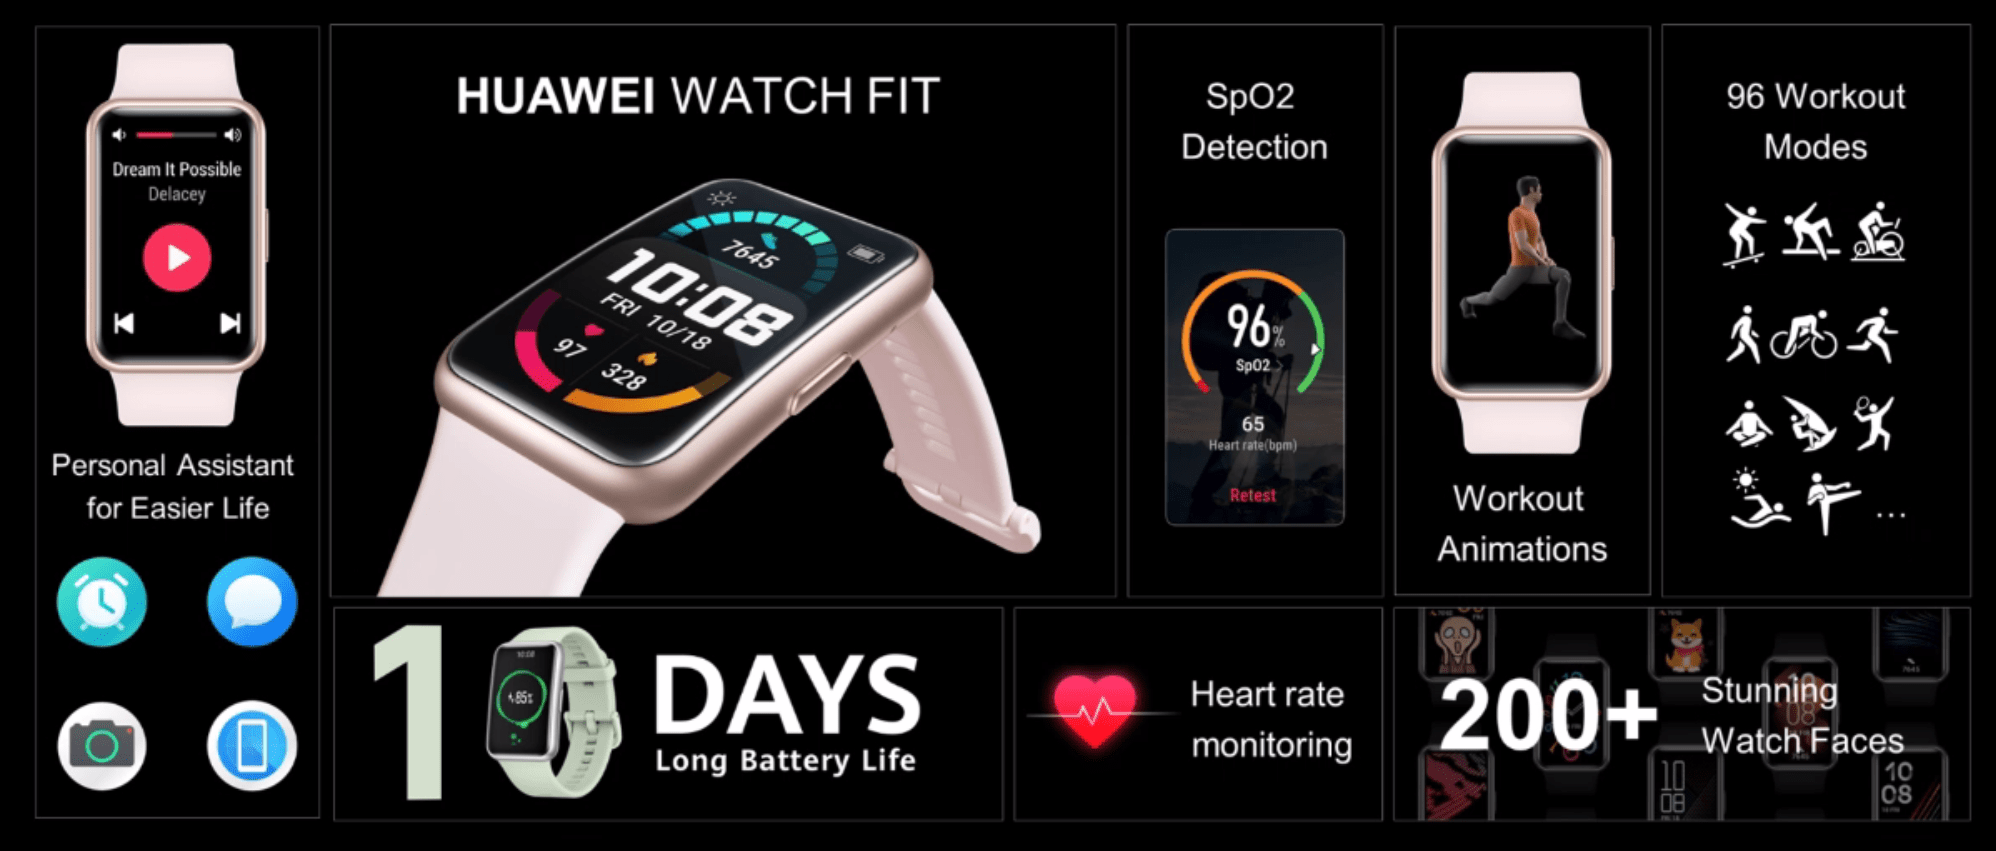 Часы fit pro как подключить к телефону. Приложение для часов Huawei. One hope Huawei часы. Сон на часах Huawei Fit. Wearfit Pro часы.